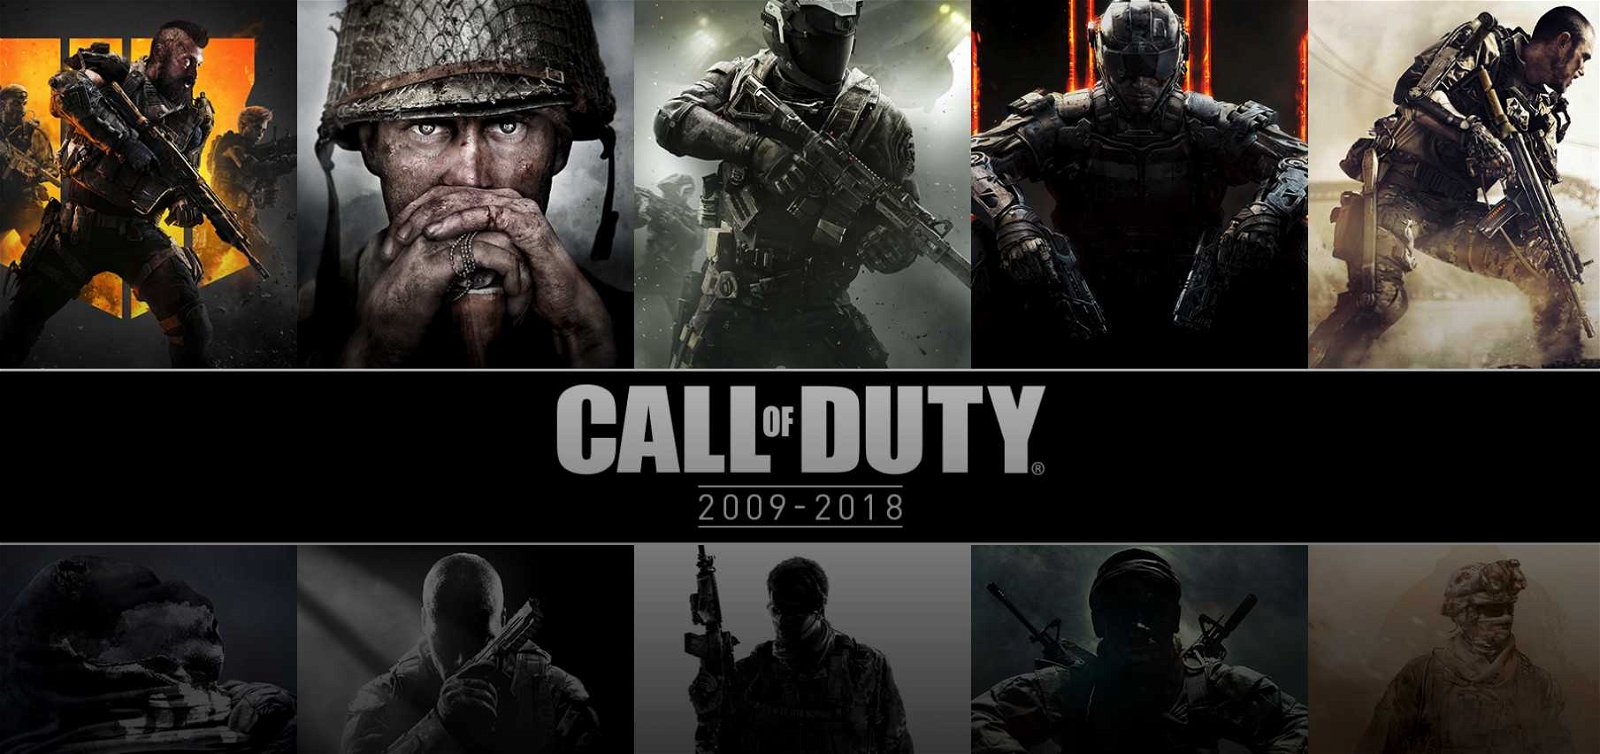 Call of Duty è il franchise più venduto in USA negli ultimi dieci anni